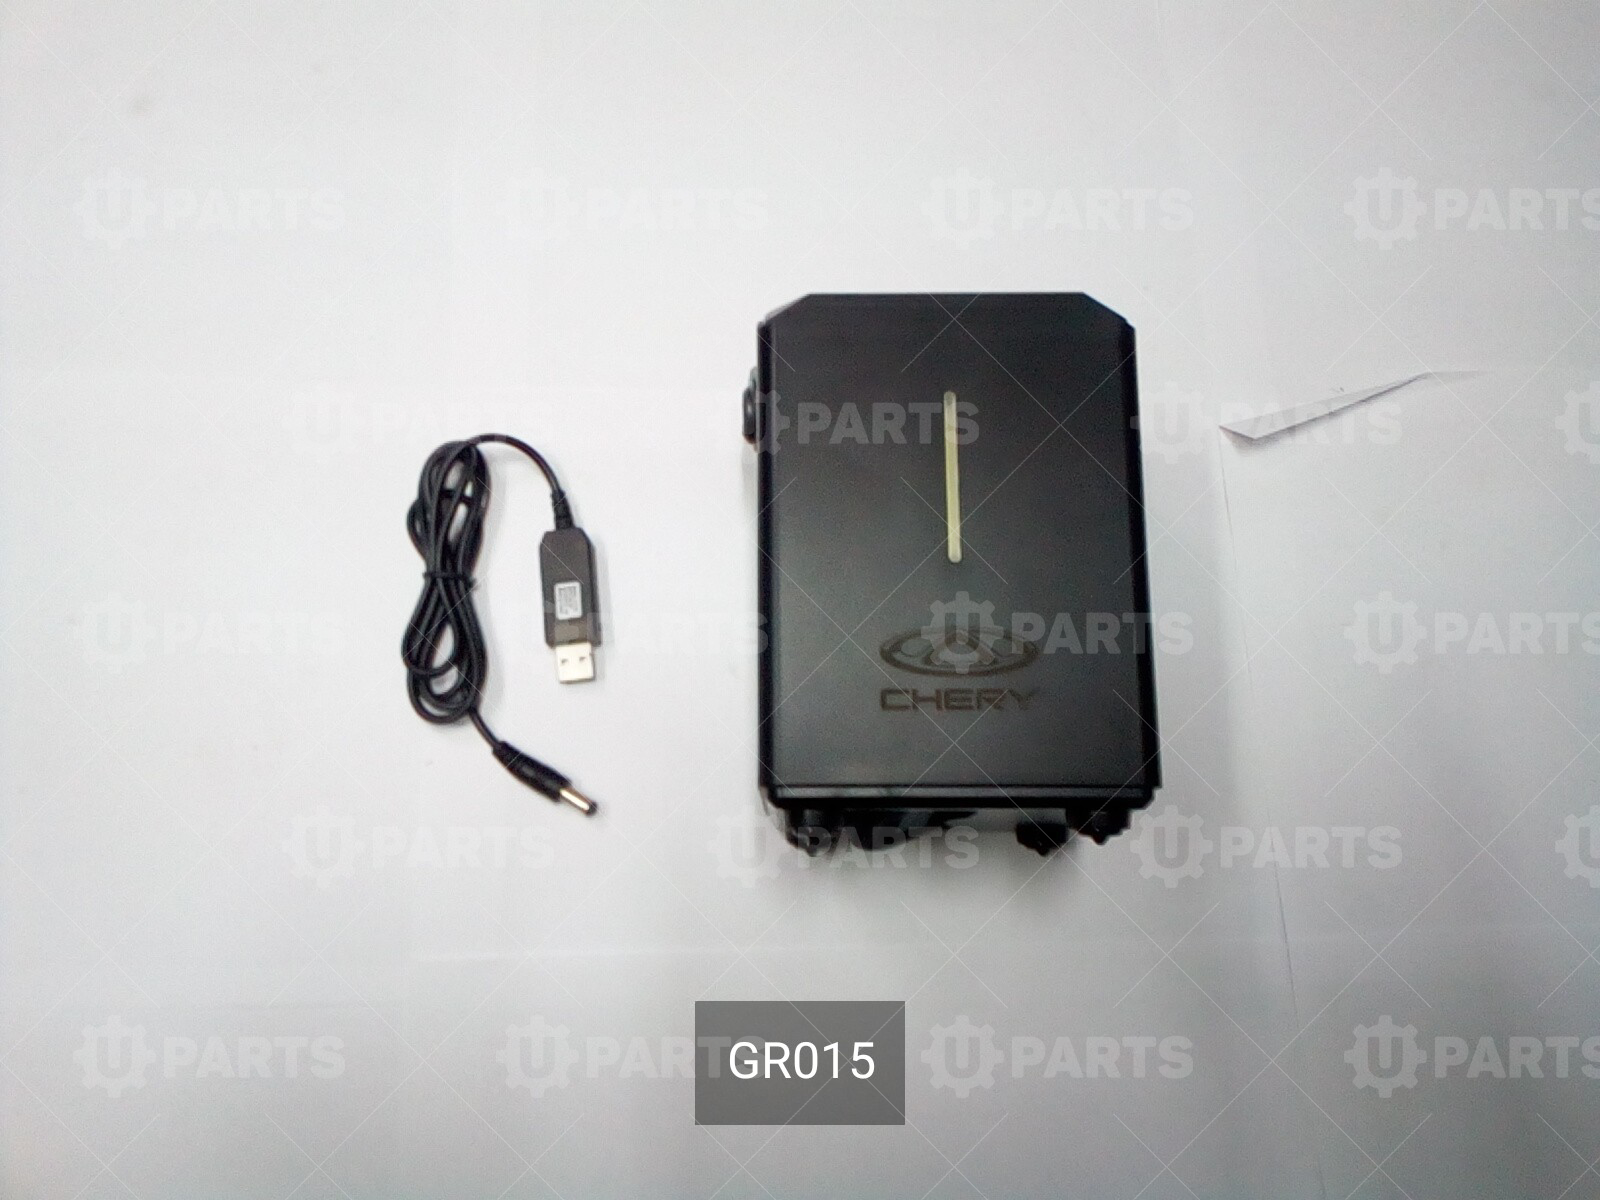 Компрессор универсальный проводной и беспроводной портативный:  ЖК дисплей, 2 режима работы | GR015. В наличии.